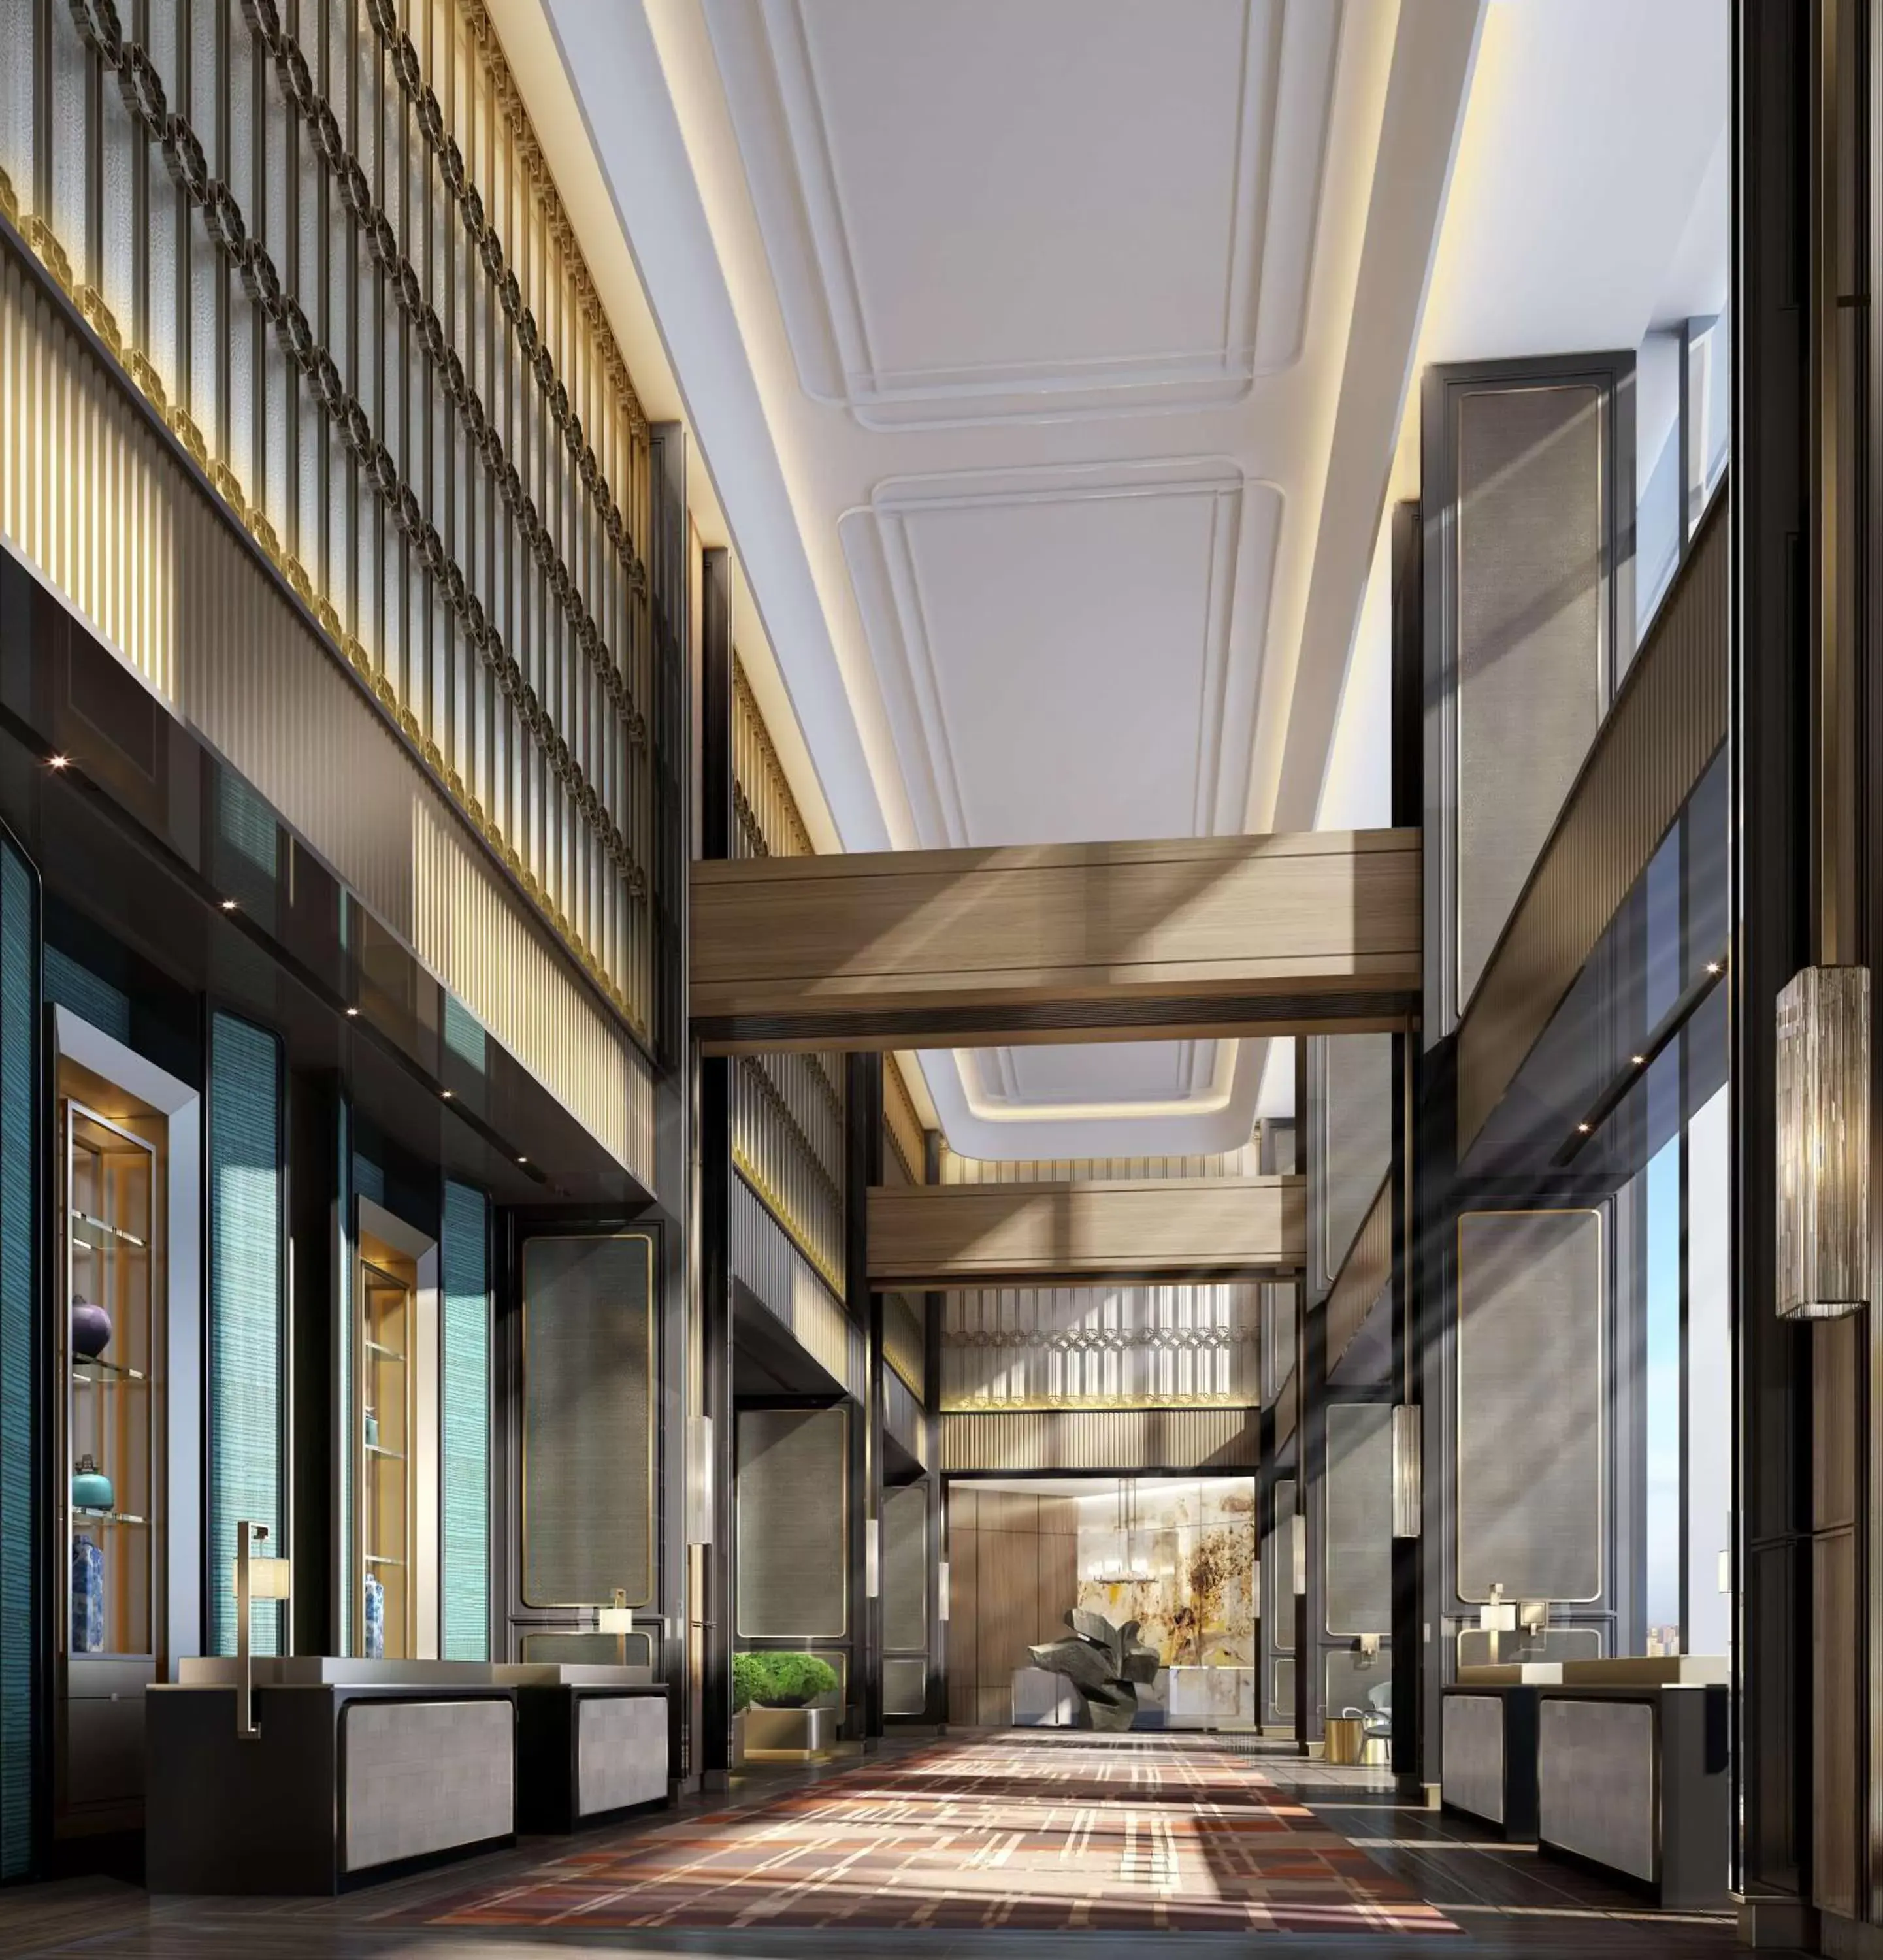 Lobby or reception in Hilton Fuzhou